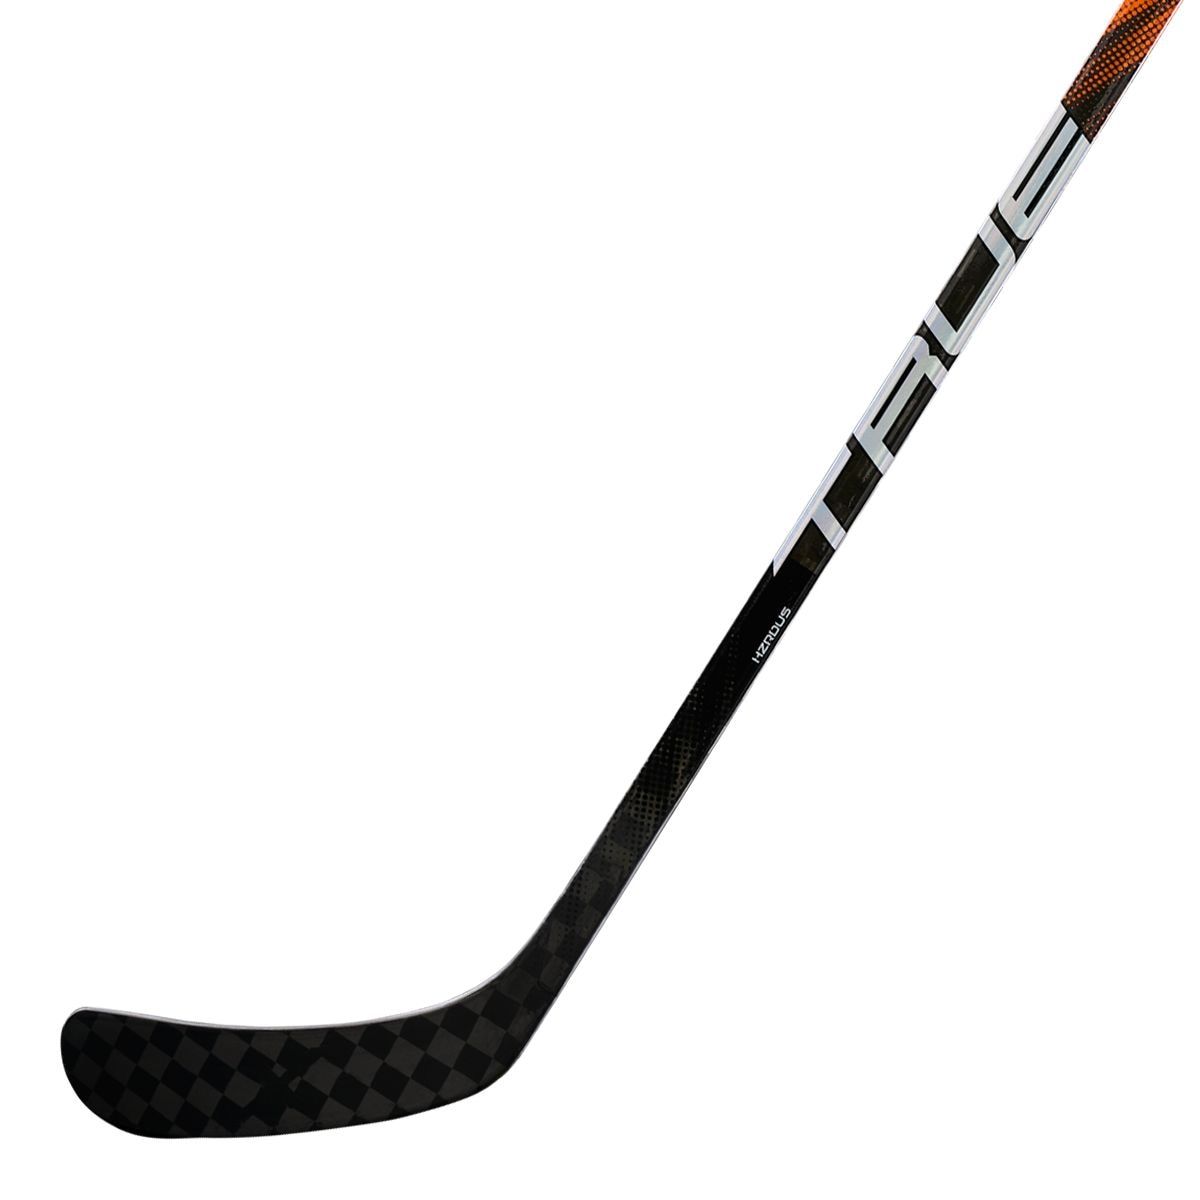 TRUE HZRDUS PX Junior Hockey Stick - 20 Flex